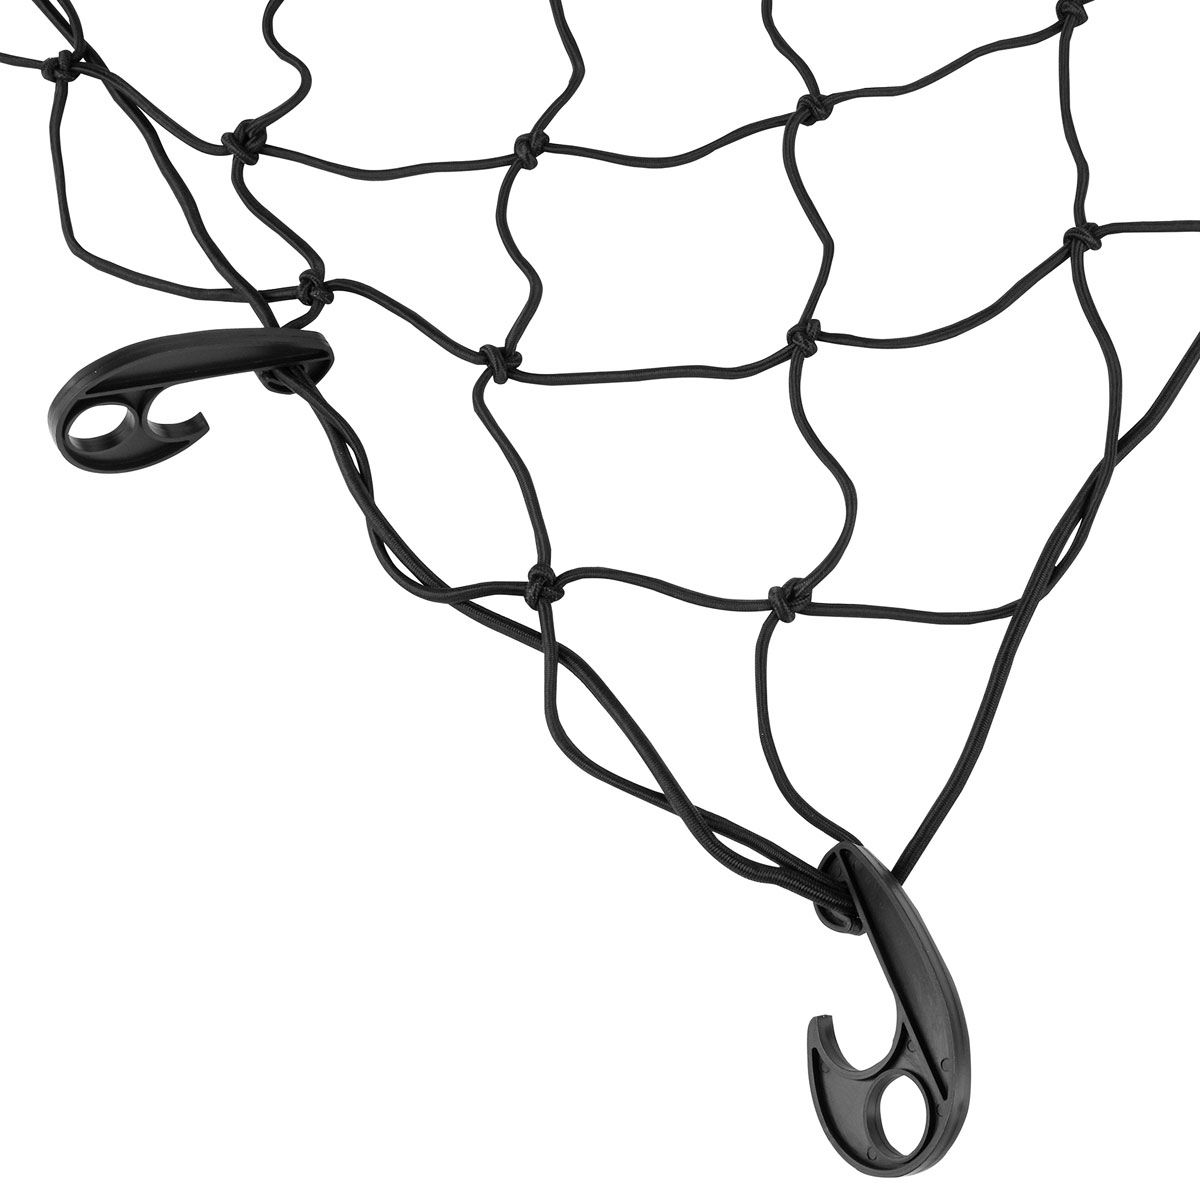 Loisiro - Filet élastique avec crochets pour remorque 150 x 220 cm